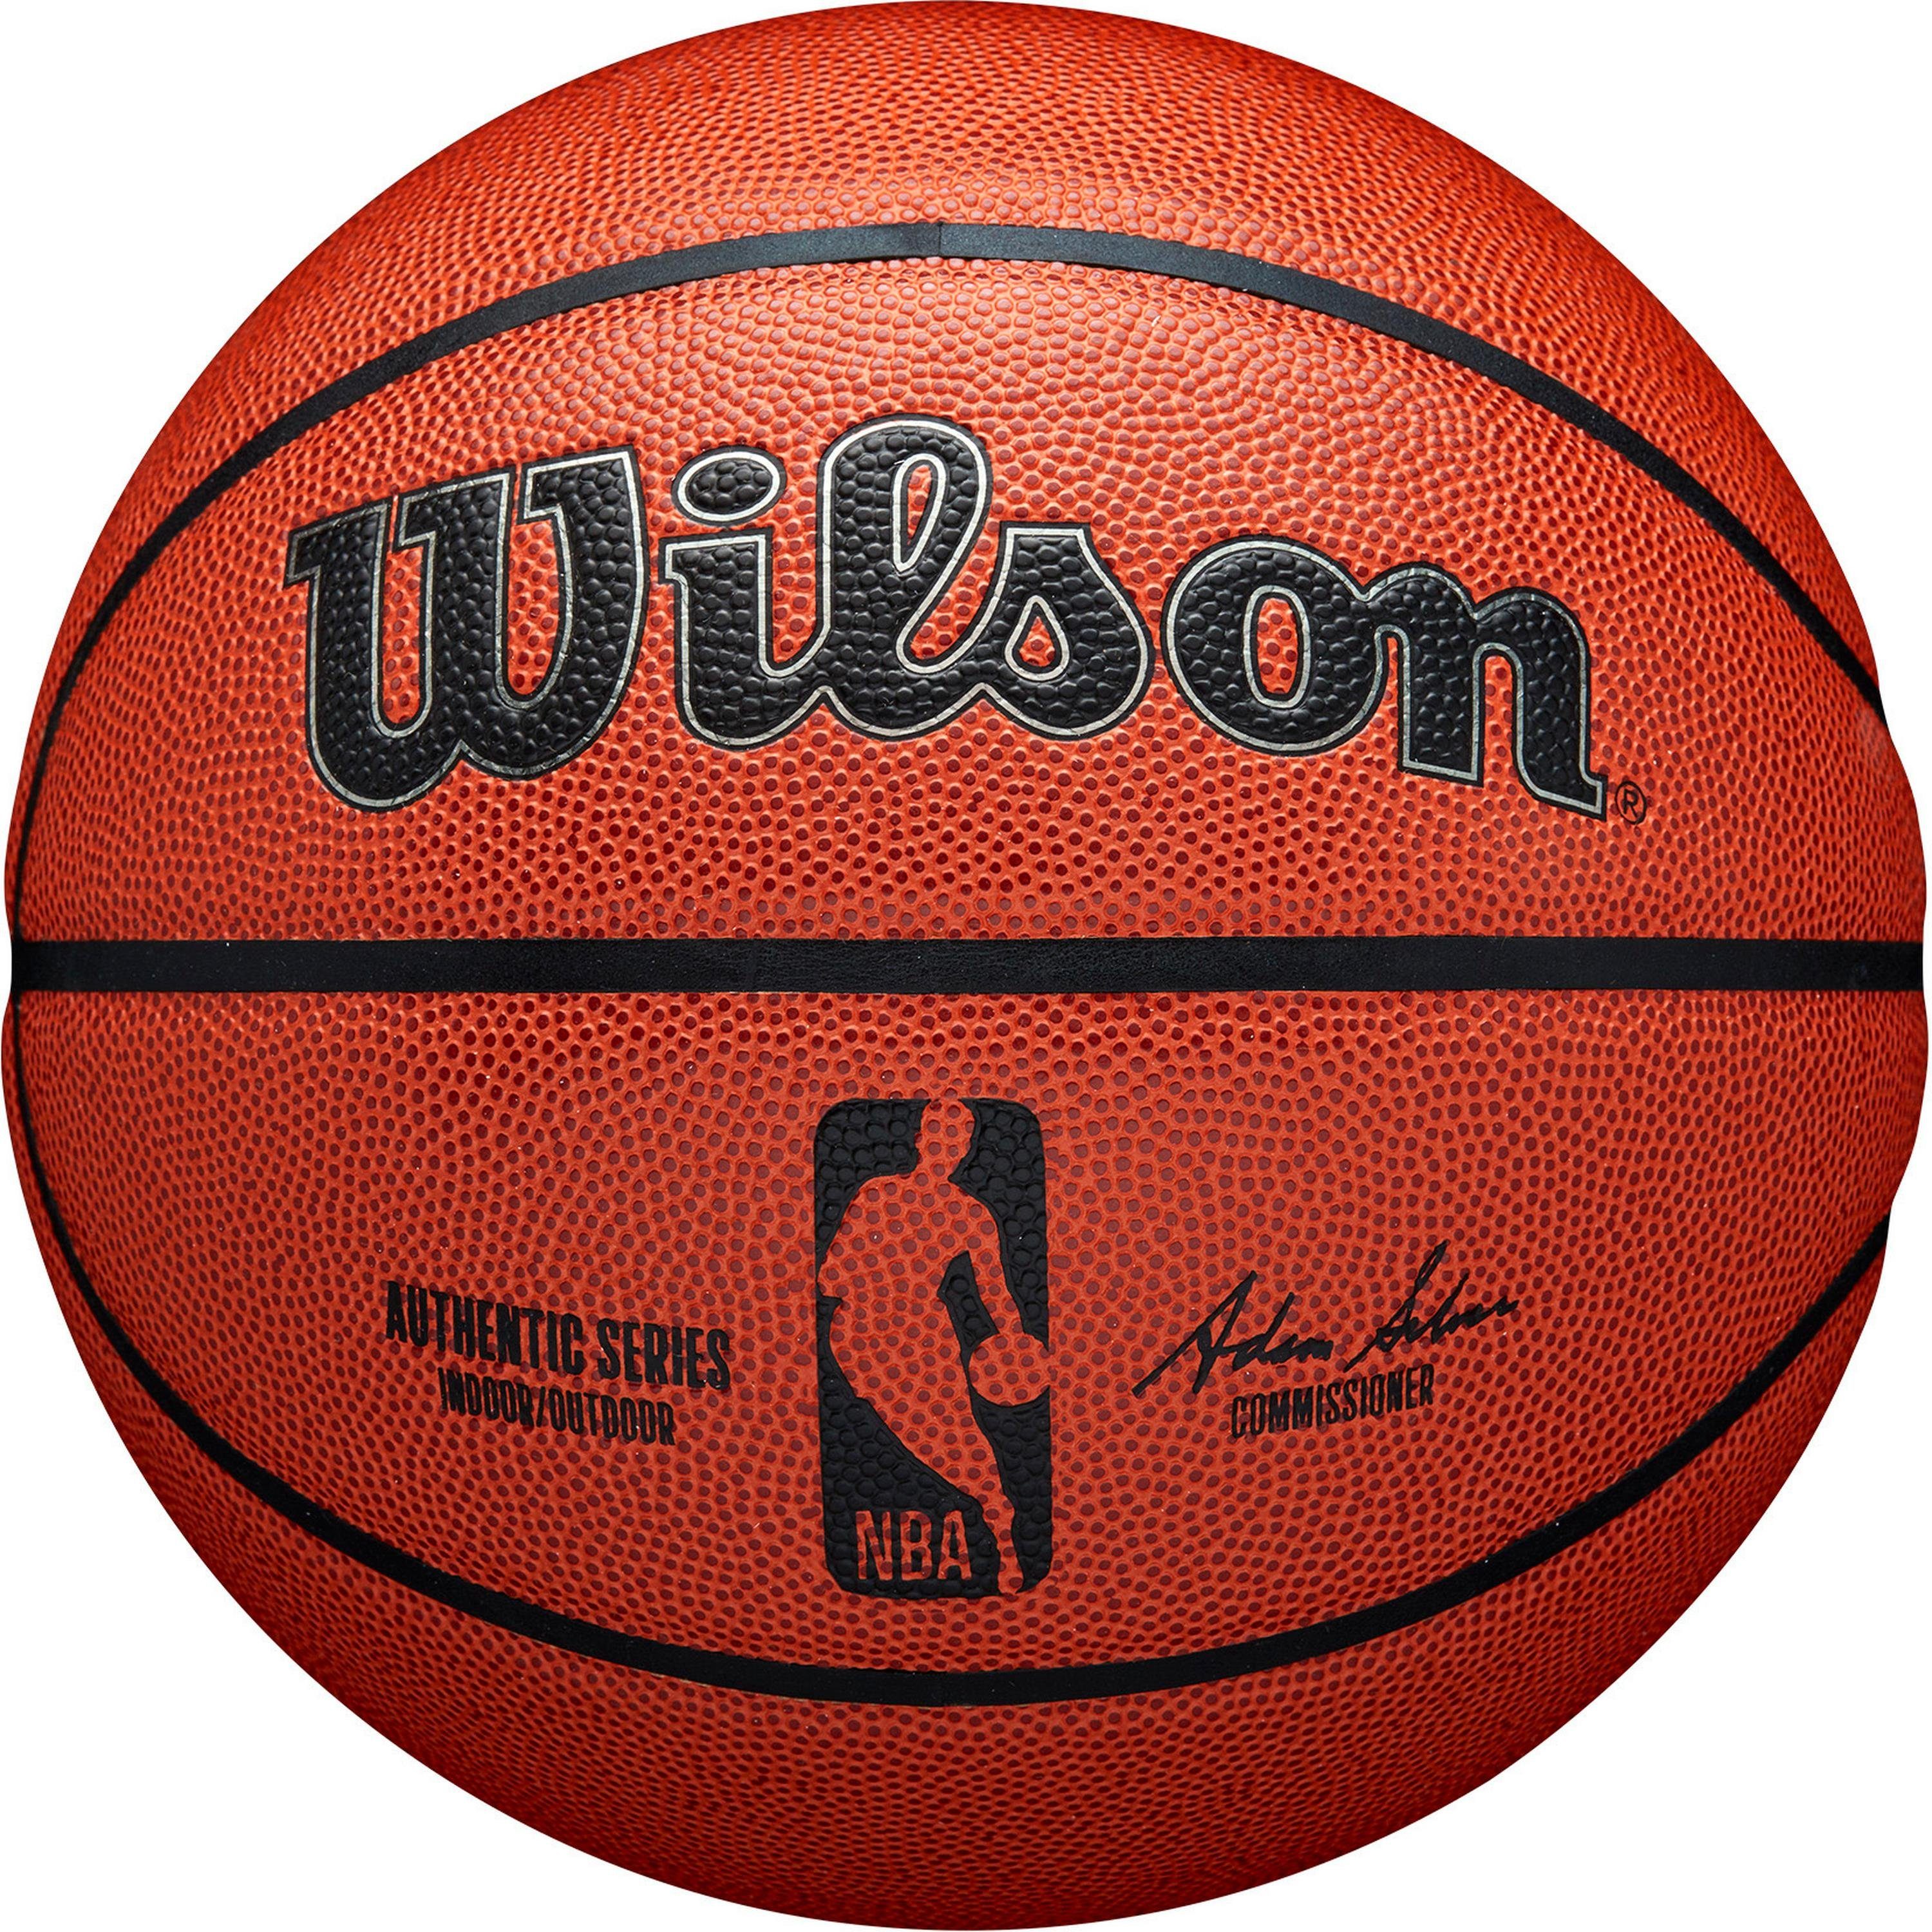 Wilson AUTHENTIC Basketball INDOOR OUTDOOR NBA